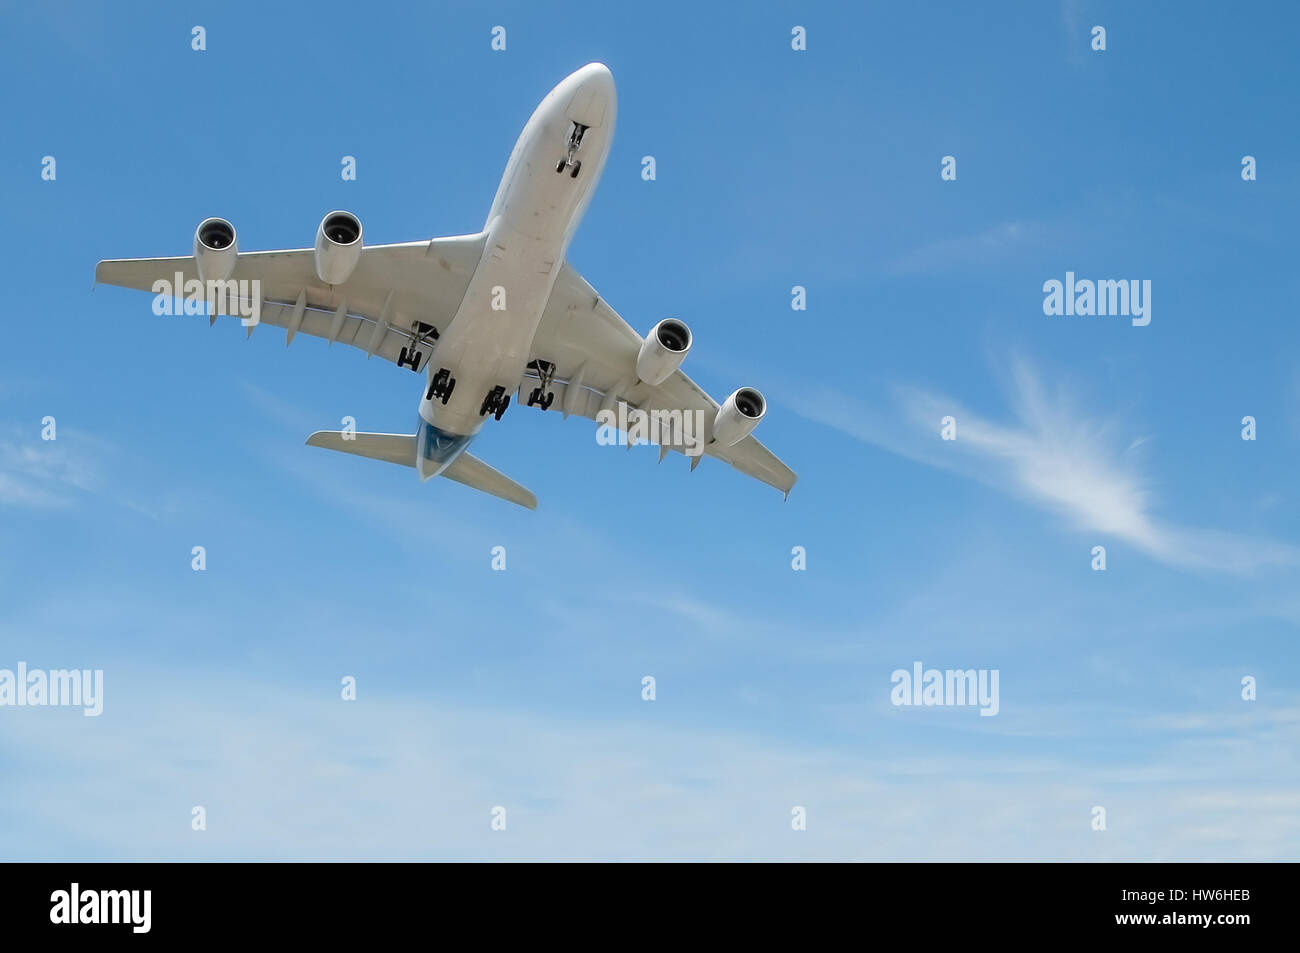 großen Jet-Flugzeuge bei der Landung Ansatz in einem blauen Wolkenhimmel Stockfoto